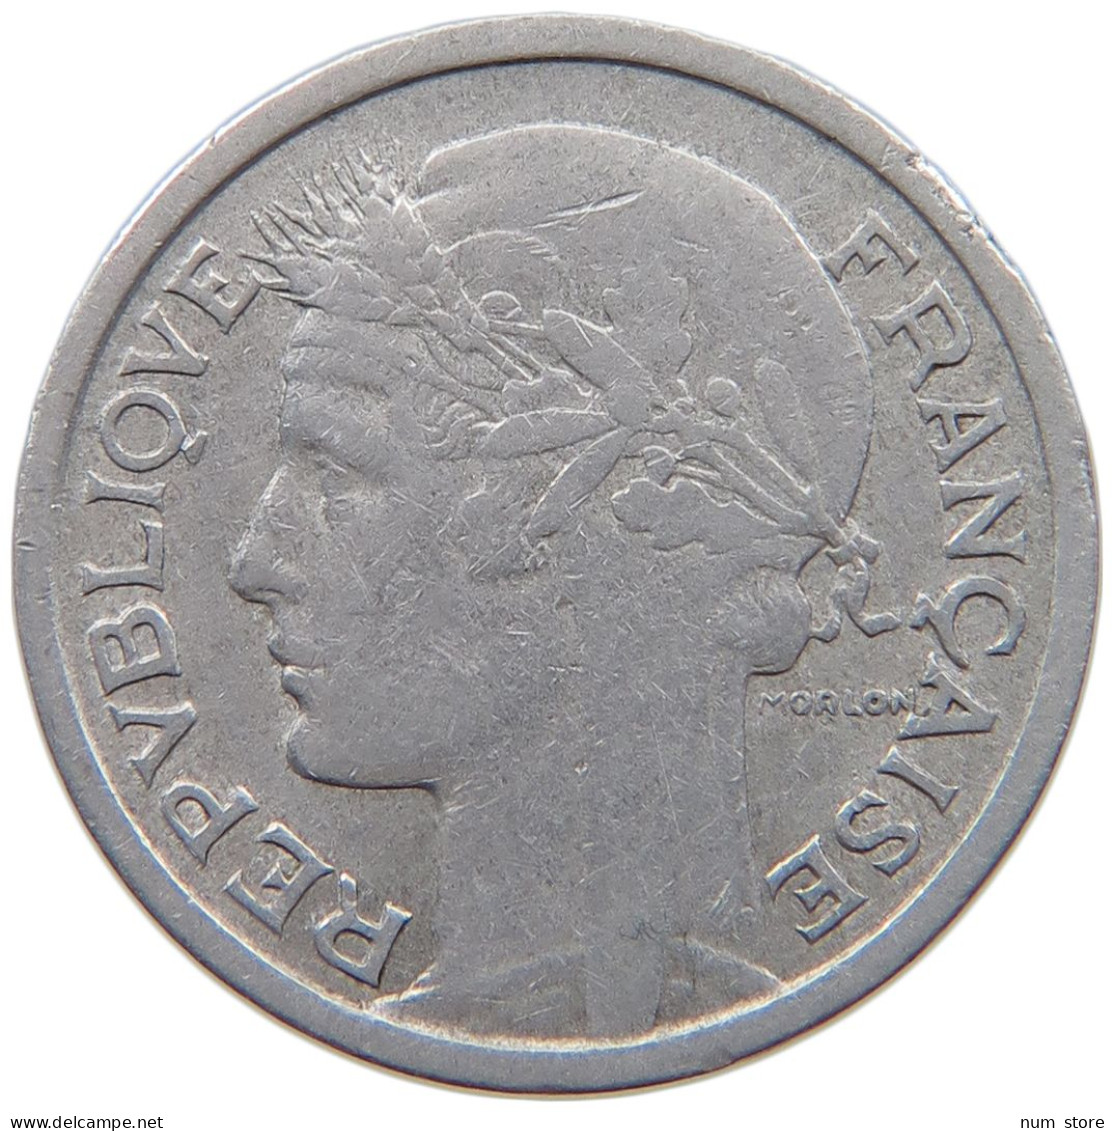 FRANCE 1 FRANC 1950 B #a060 0195 - 1 Franc